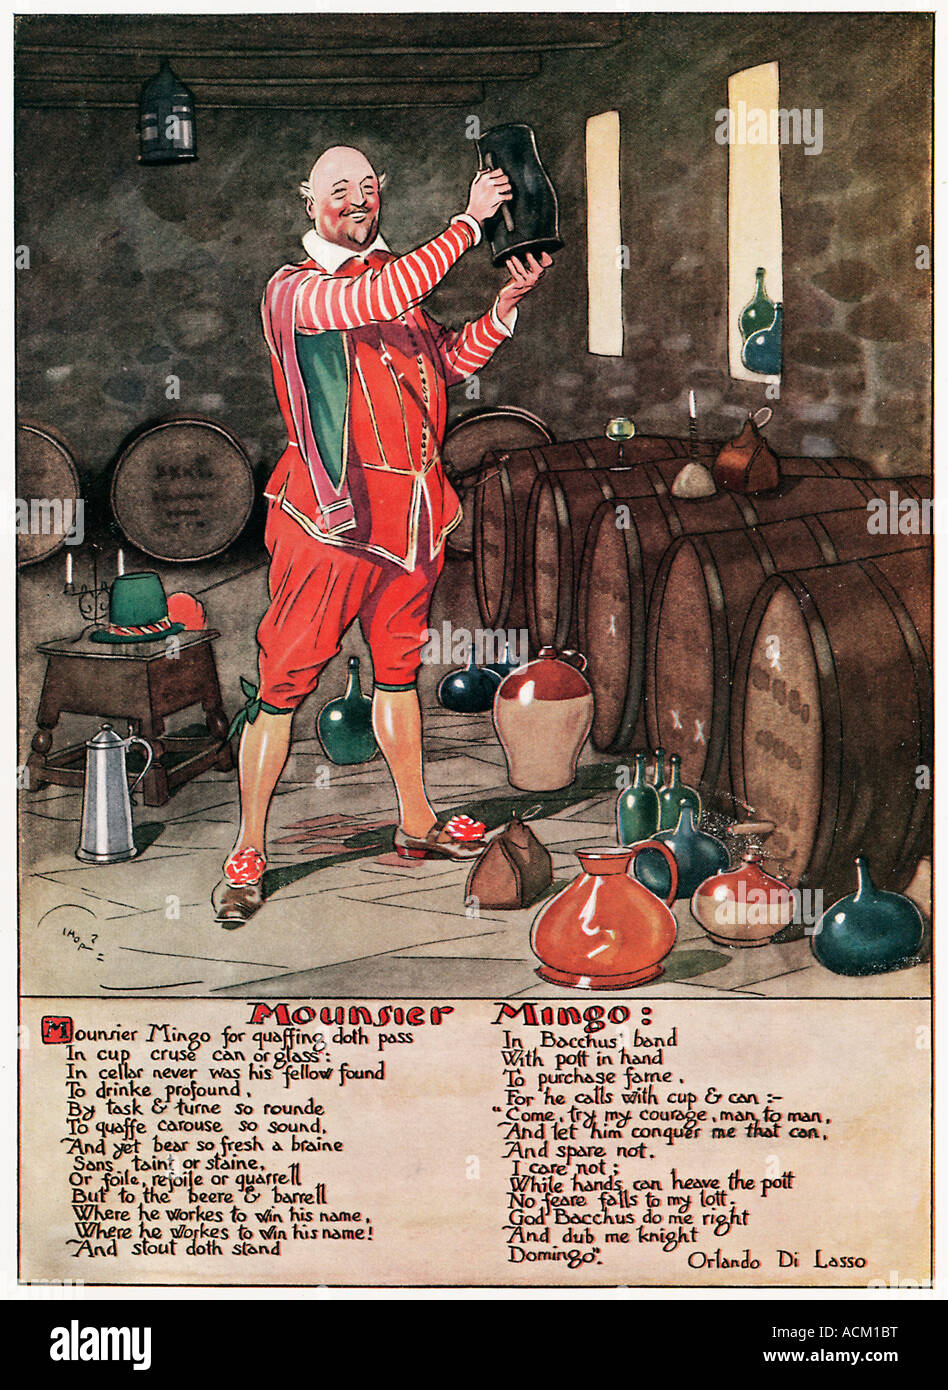 Monsieur Mingo poema por Orlando di Lasso acerca de un legendario boozer mientras manos puede enarbolar el pott feare no corresponde a mi lott Foto de stock